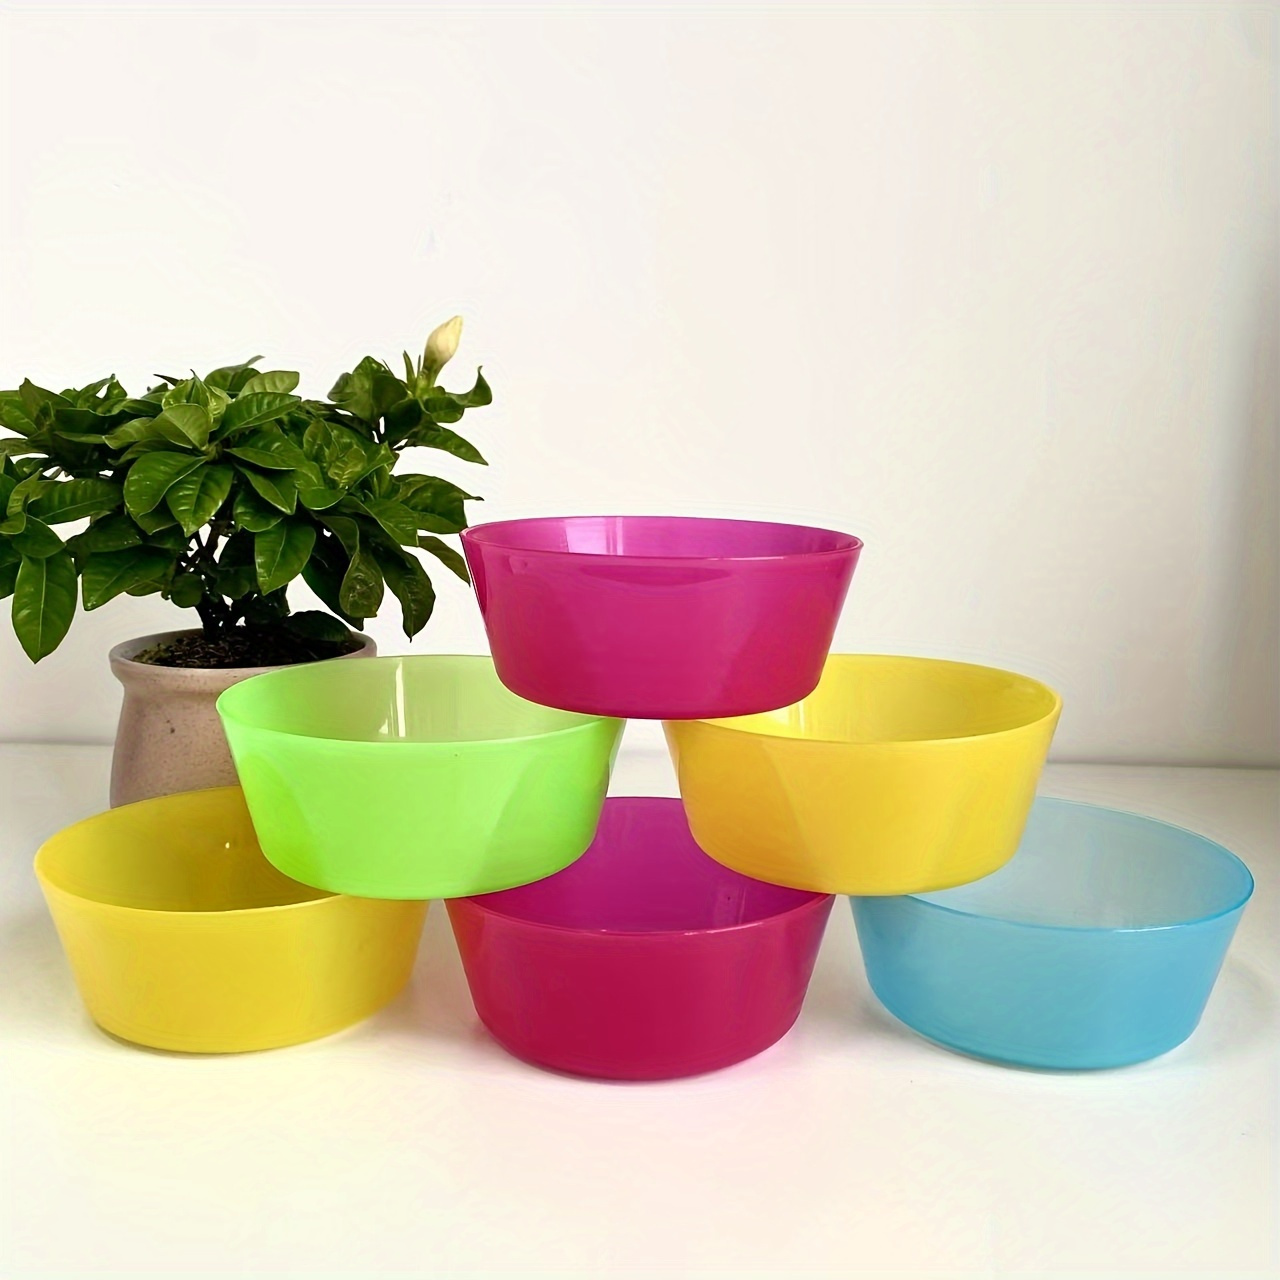 12pcs Plastic Bowls Set, 3 Sizes 14/20/25oz Unbreakable Reusable Light  Weight Bowl For Cereal, Noodle, Soup, Pasta, Ramen, Popcorn, Ice Cream,  Fruit